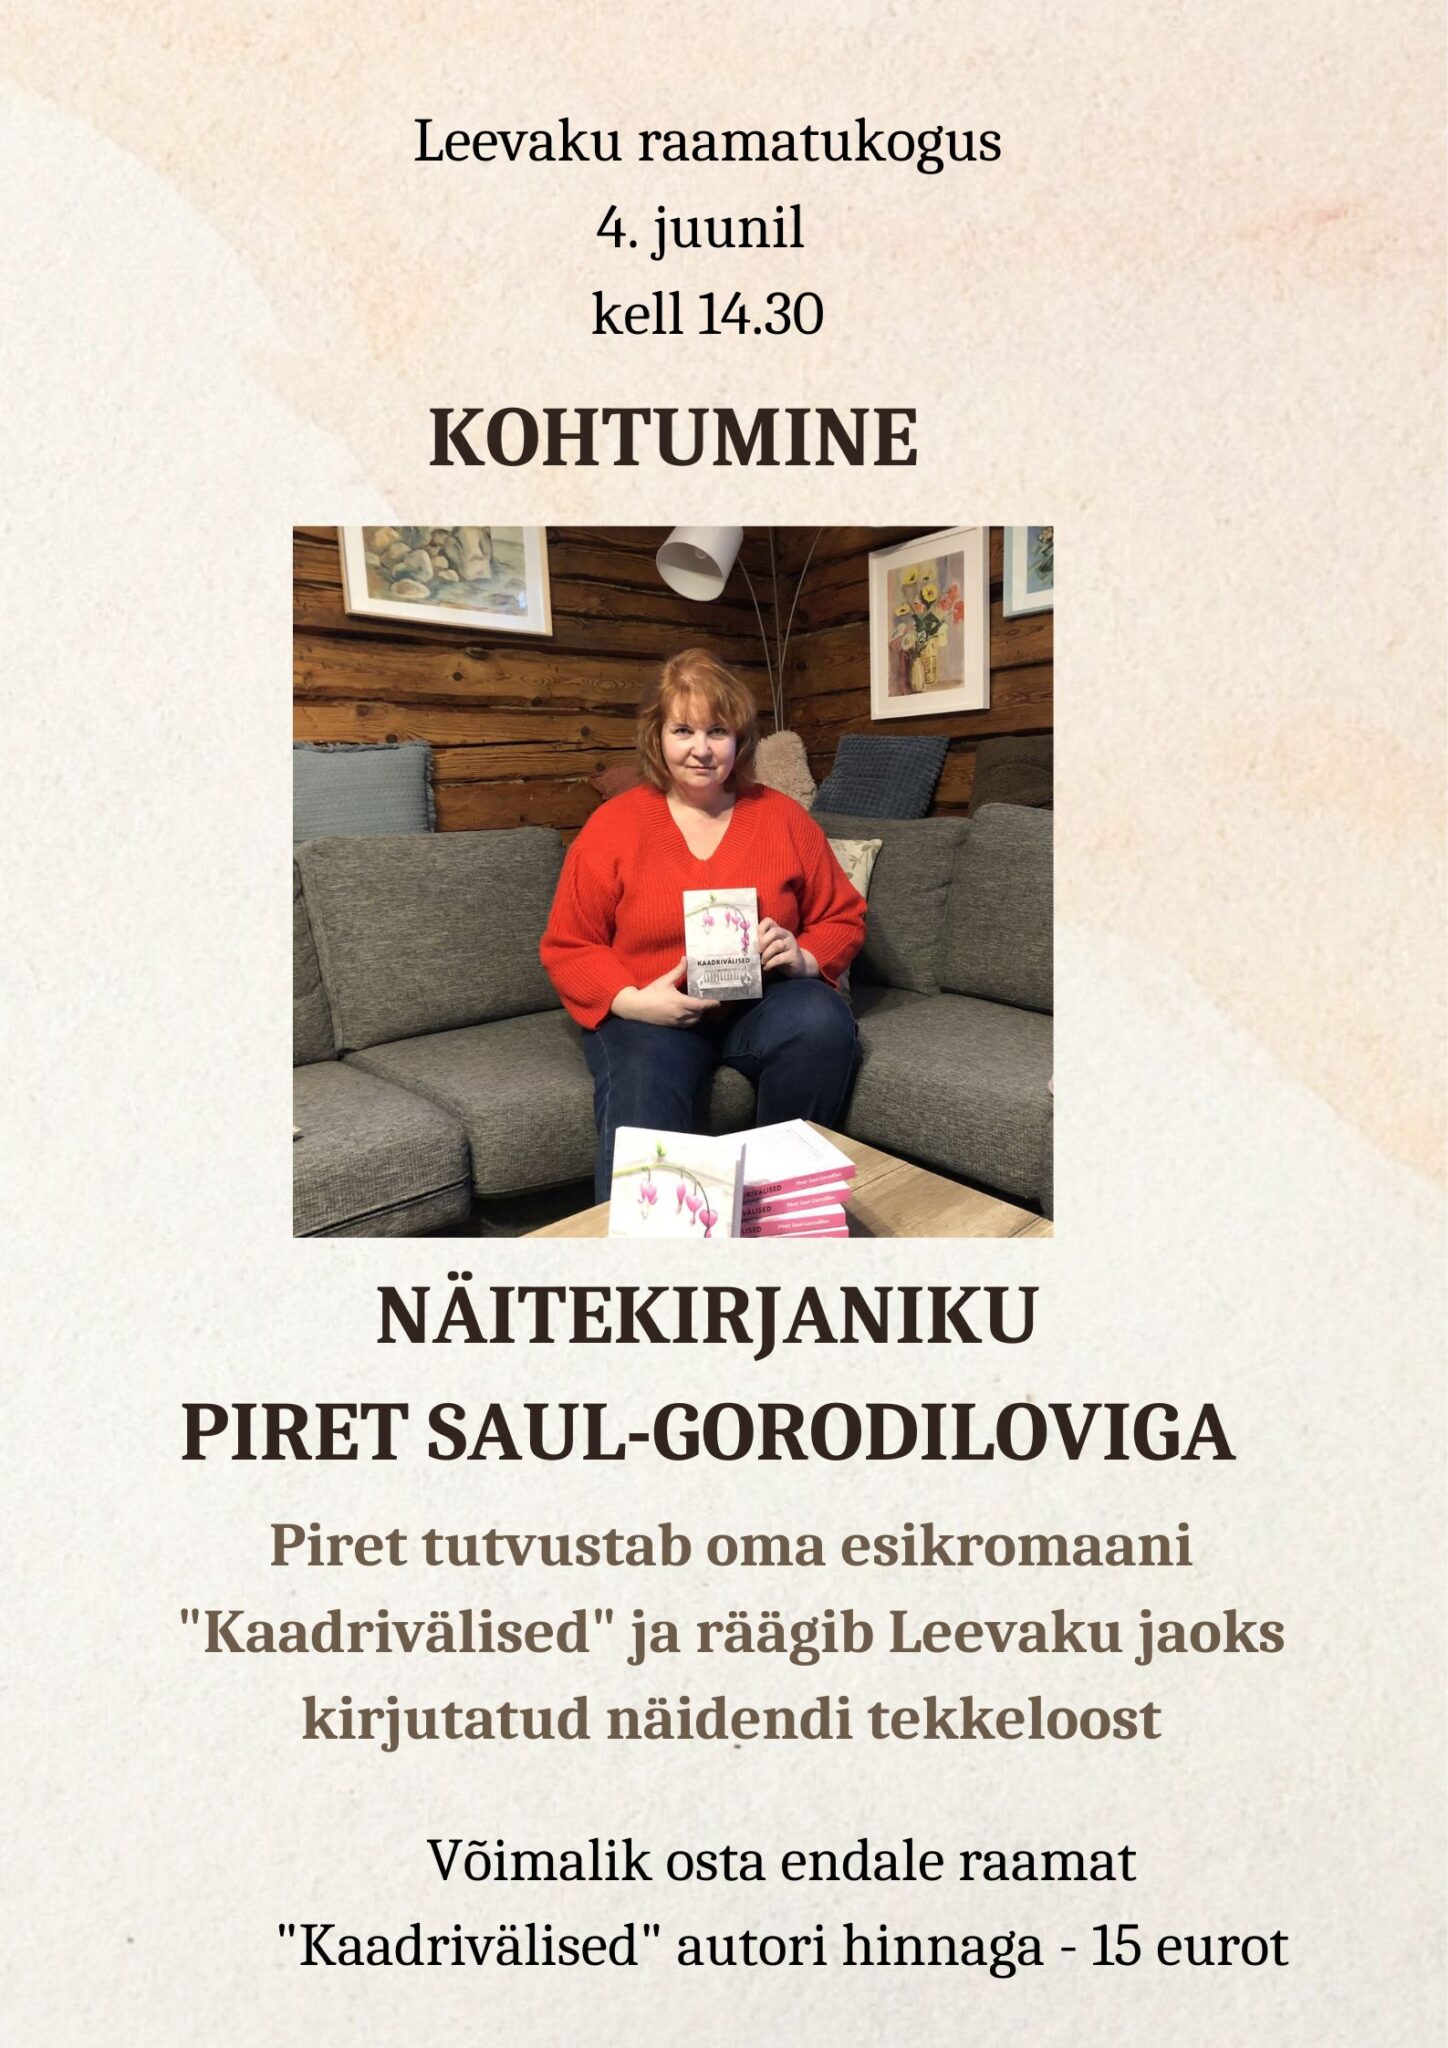 Kohtumine näitekirjanik Piret Saul-Gorodiloviga @ Leevaku raamatukogus | Leevaku | Põlva maakond | Eesti